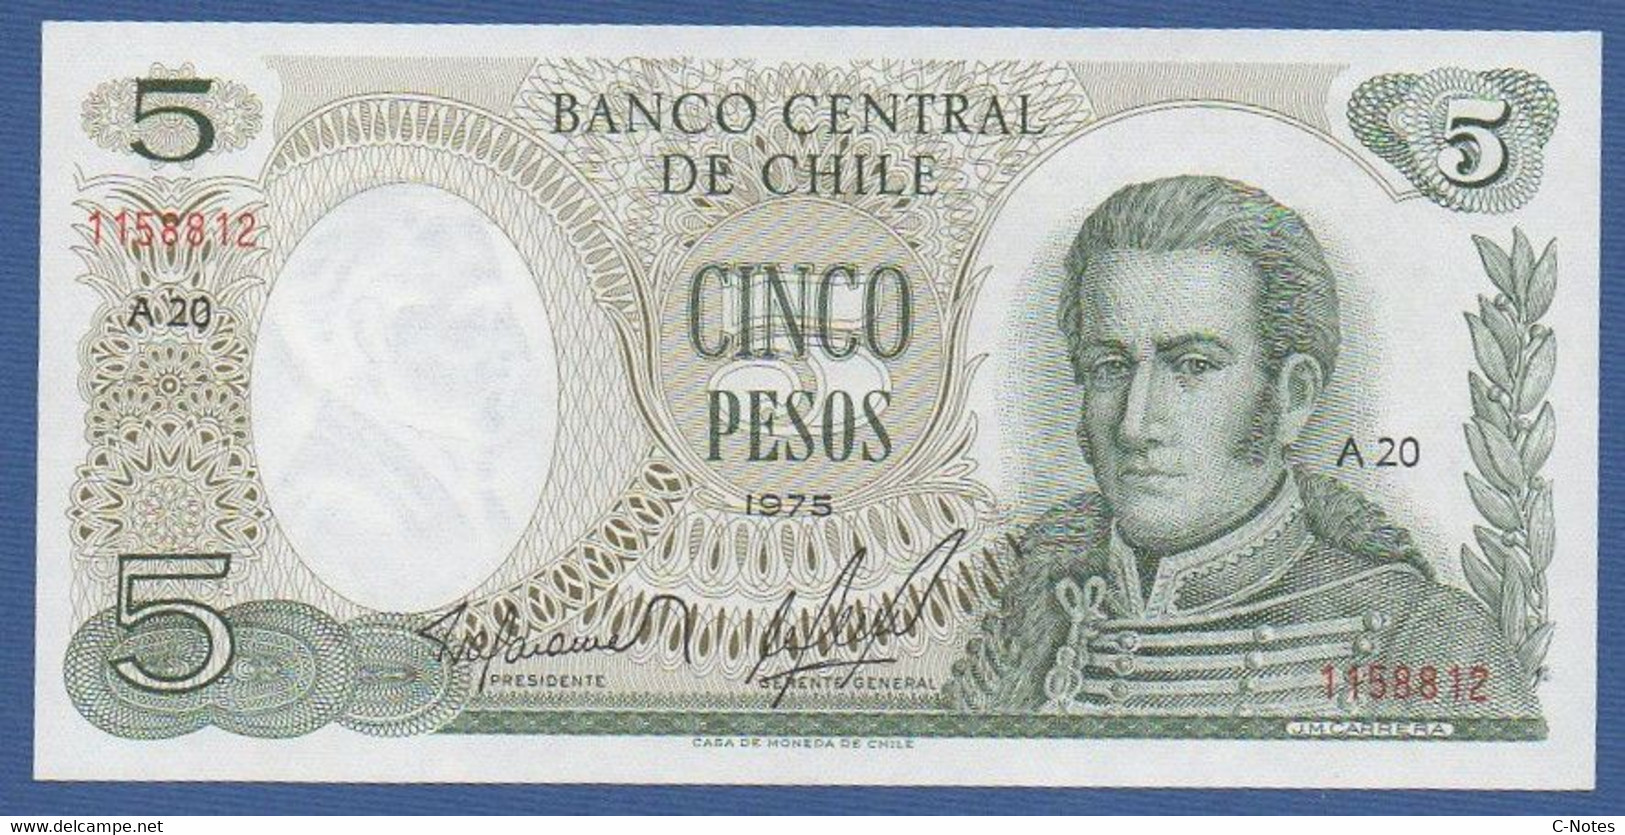 CHILE - P.149a – 5 Pesos 1975 UNC, Serie A20 1158812 - Chili